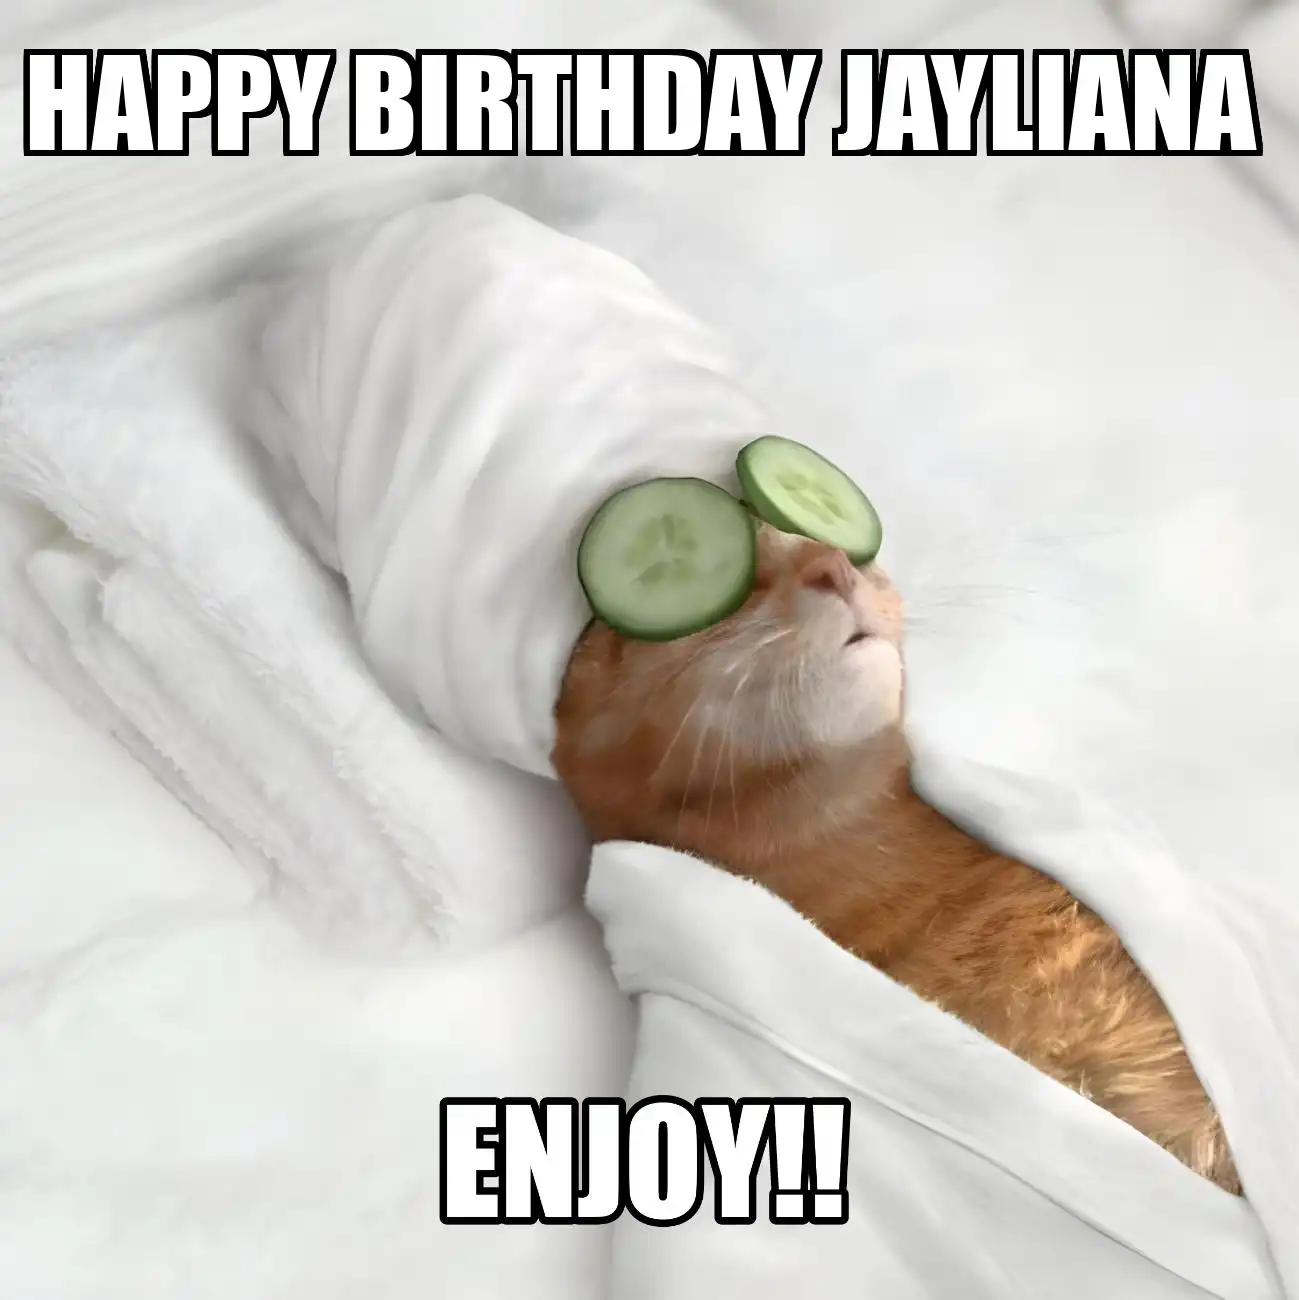 Happy Birthday Jayliana Enjoy Cat Meme